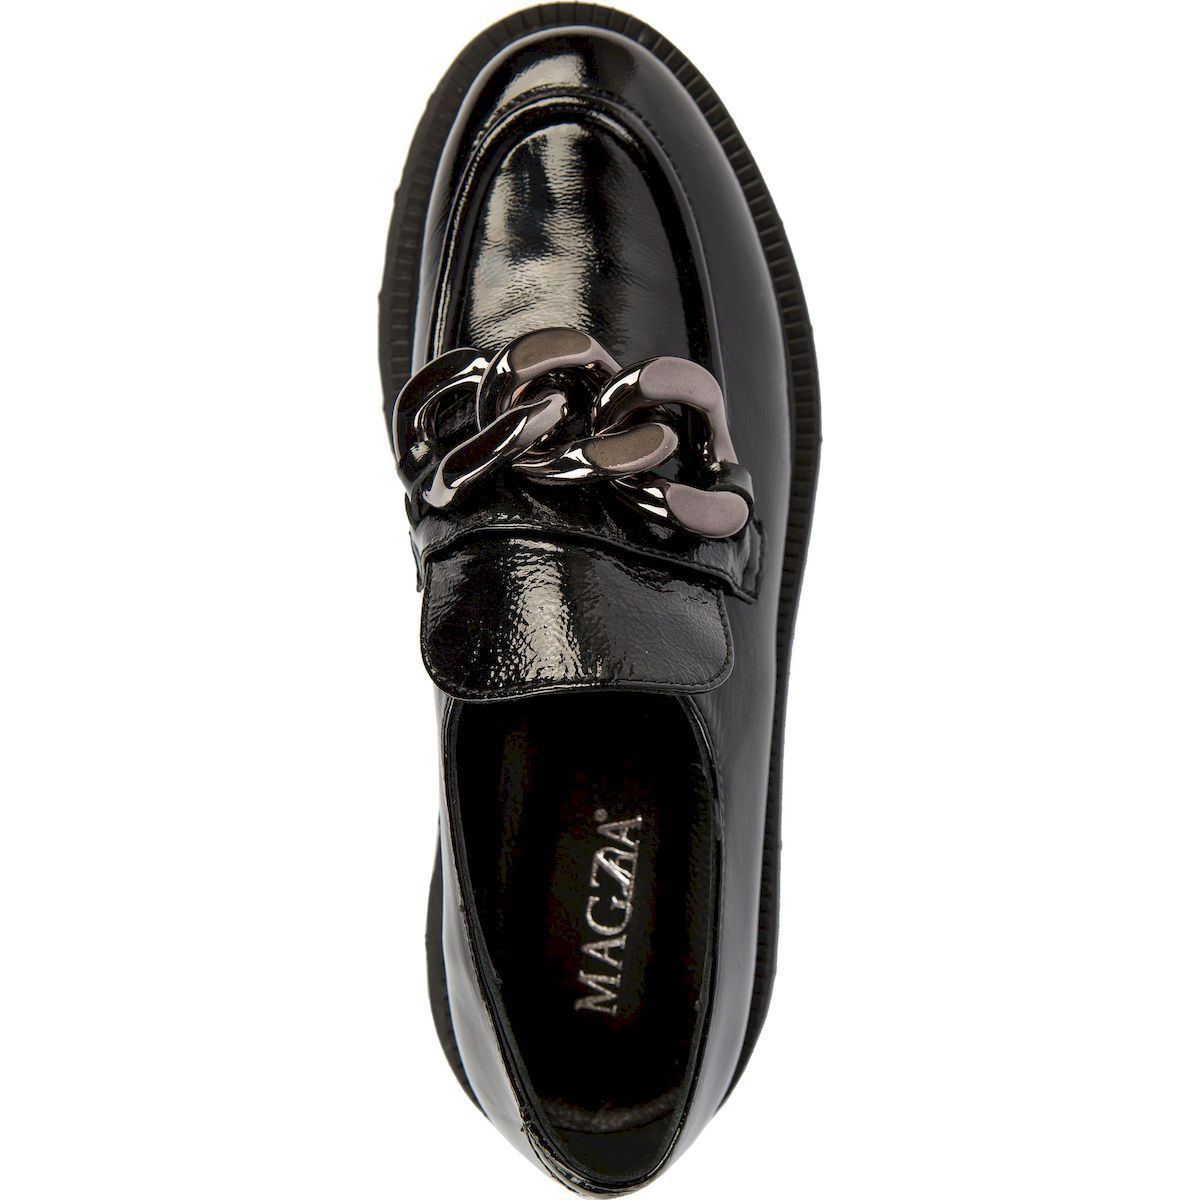 Купить женские Лаковые туфли MAGZA B5303л0 в интернет-магазине обуви и  аксессуаров Бренд со скидкой